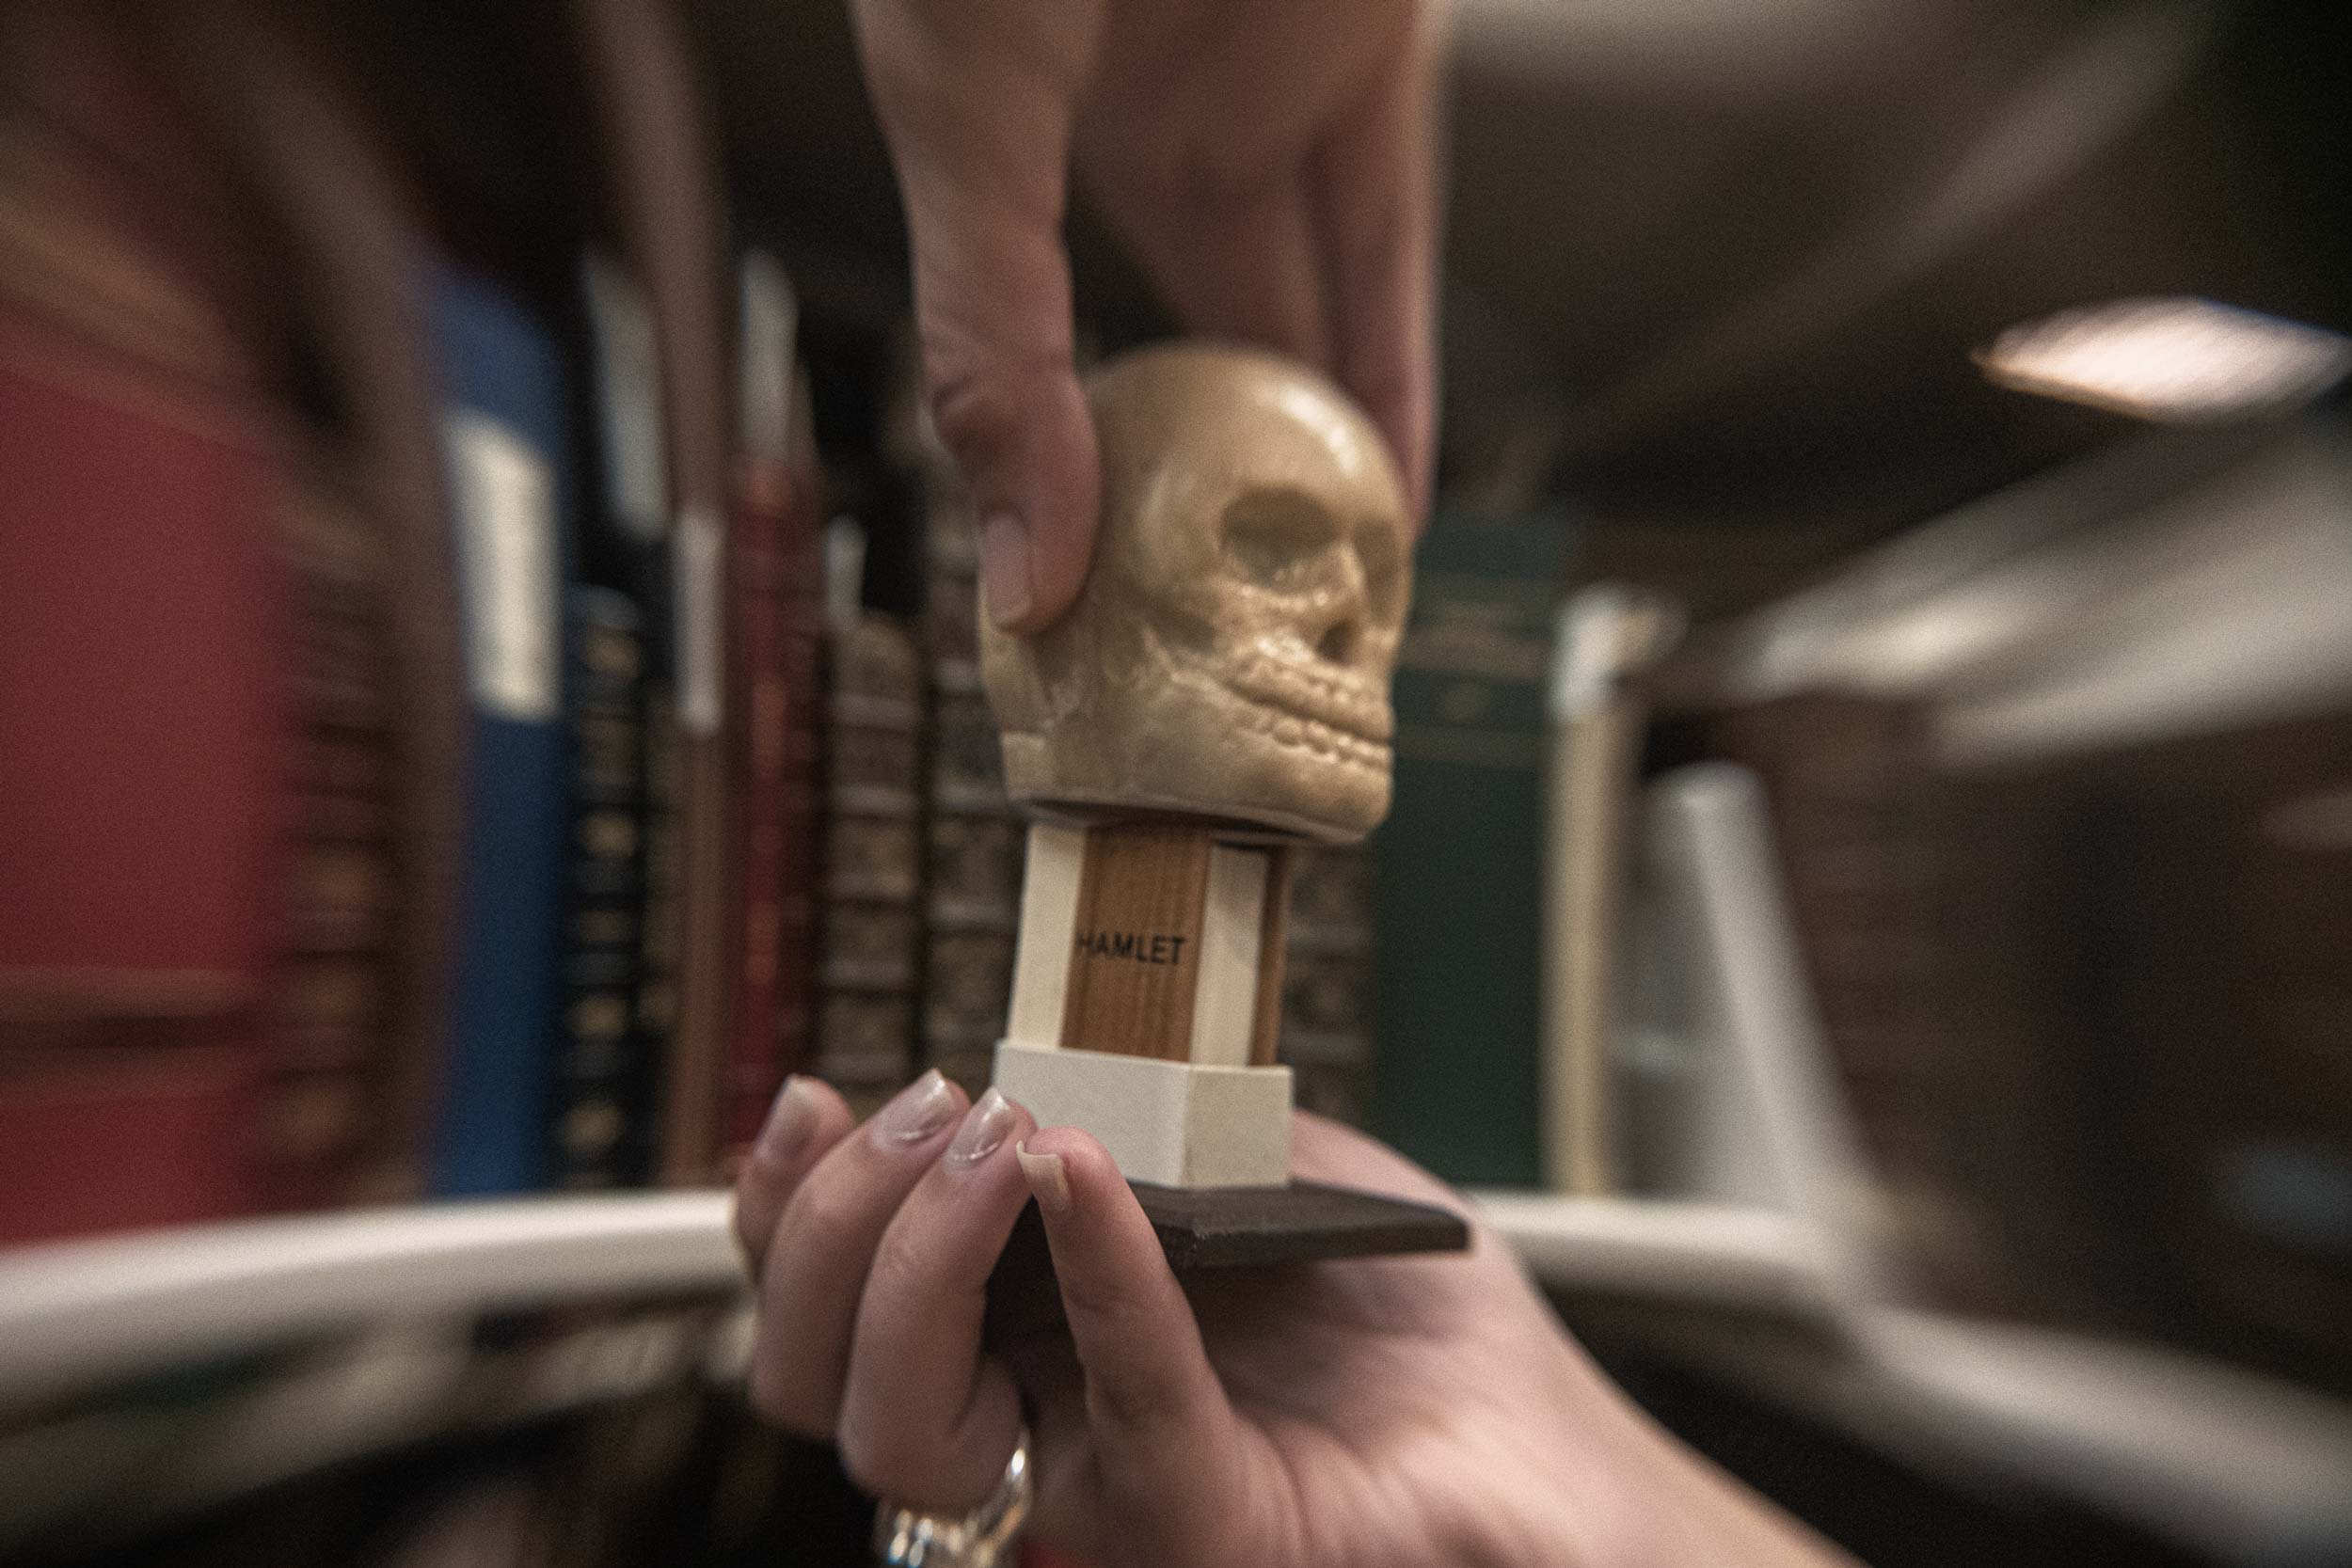 A tiny human skull model